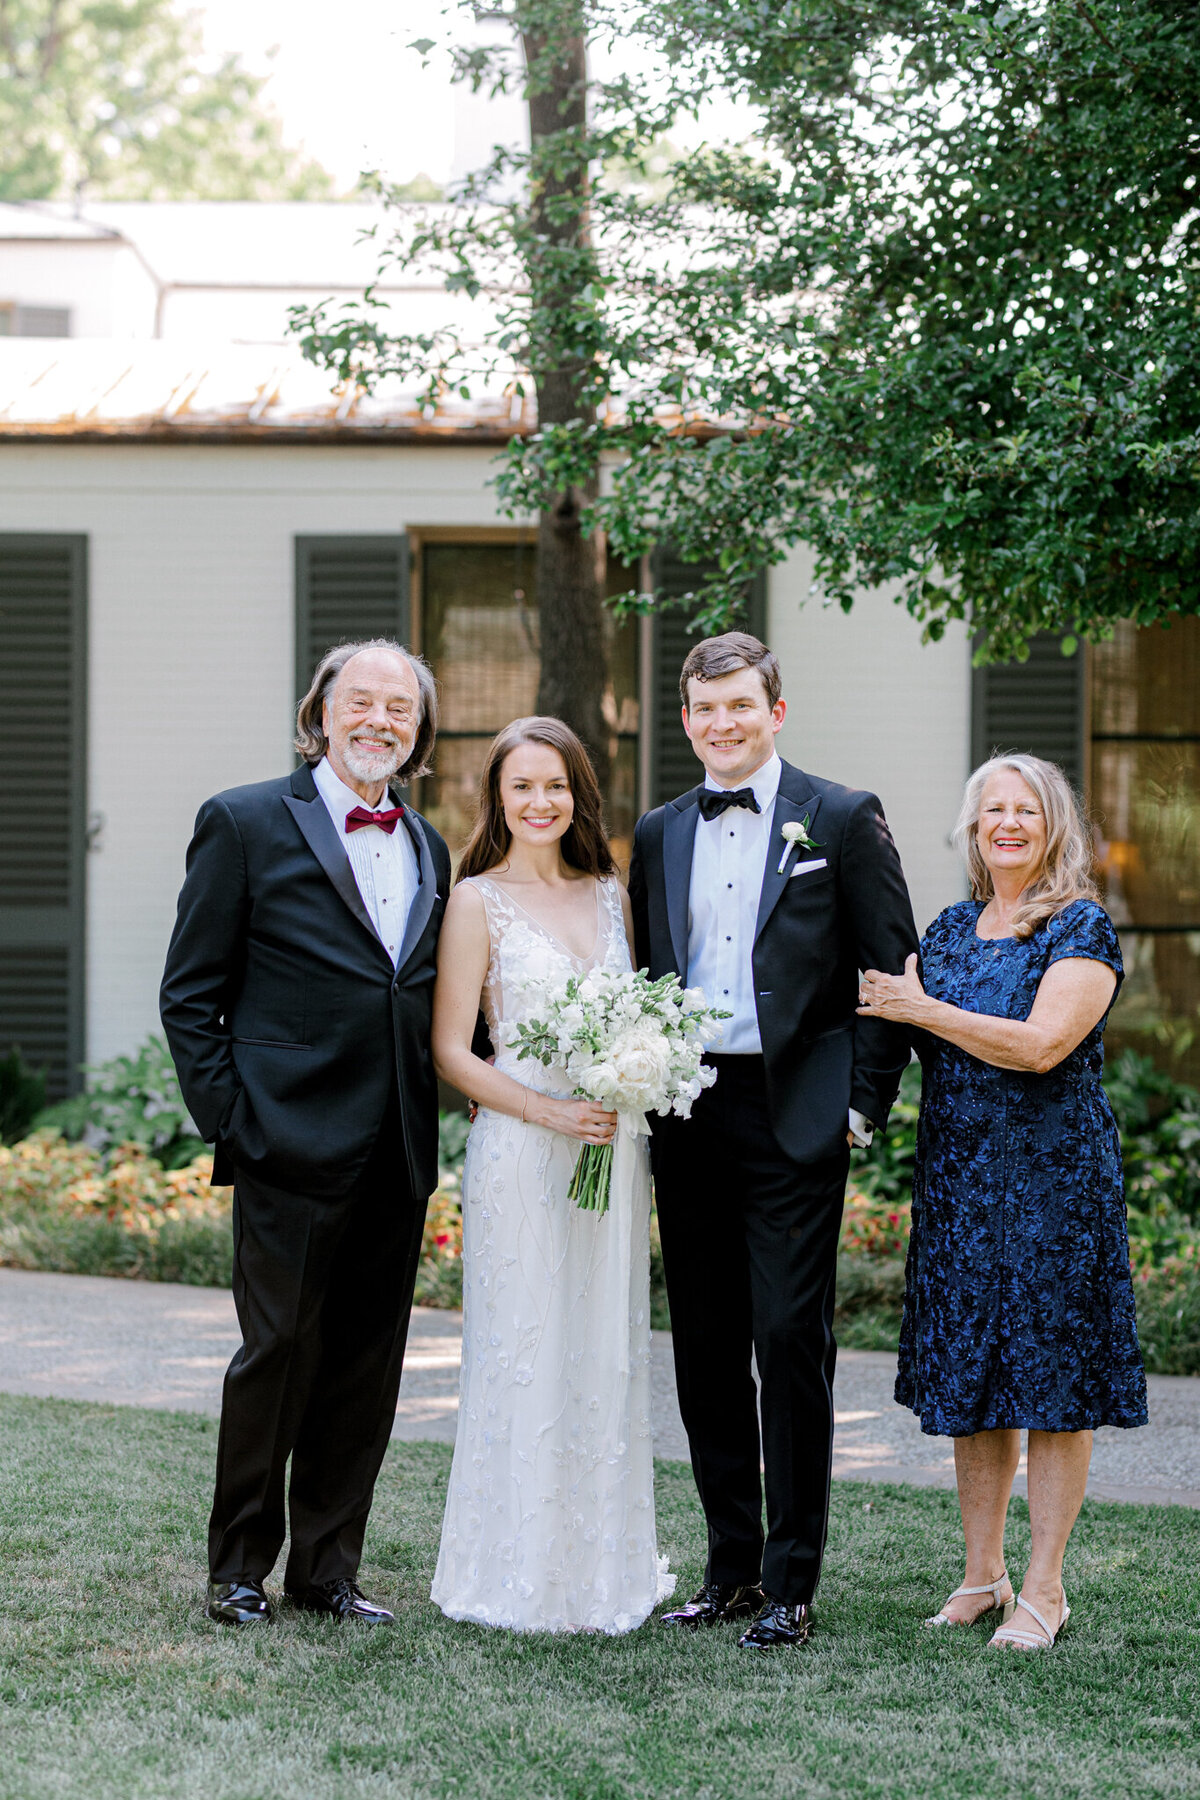 Gena & Matt's Wedding at the Dallas Arboretum | Dallas Wedding Photographer | Sami Kathryn Photography-121